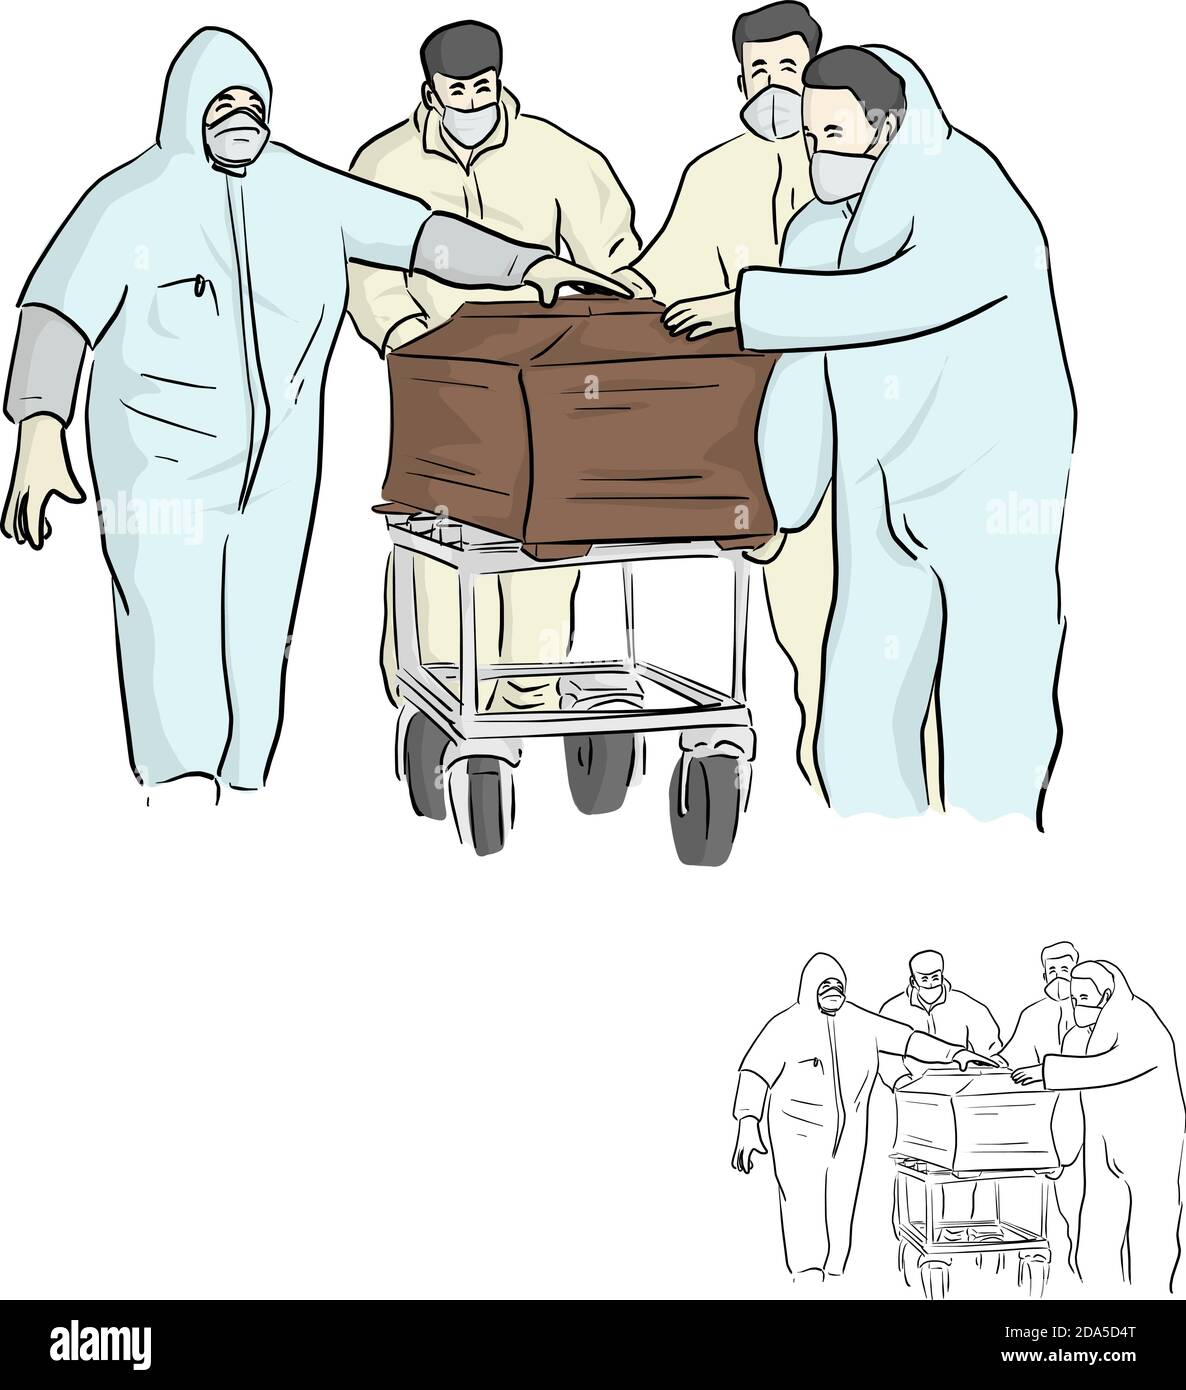 Vier Personen in PSA-Anzug oder persönlicher Schutzausrüstung tragen Der Sarg Handhabung für Entsorgung Vektor Illustration Skizze Doodle Hand Isoliert gezeichnet Stock Vektor